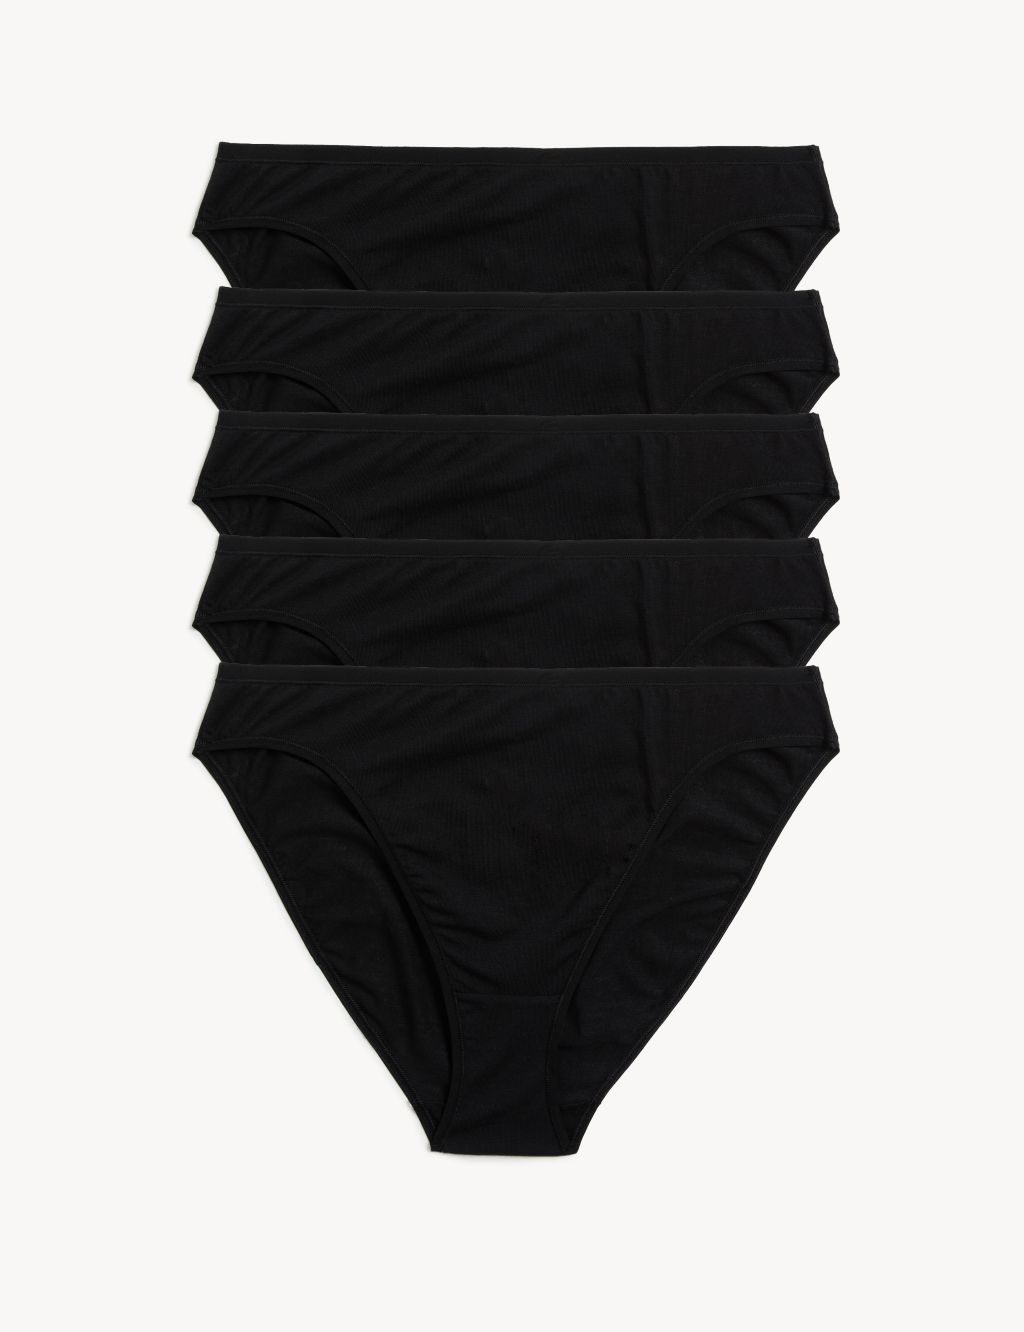 Btlankou Knickers For Women Multipack Underwear For Women High Leg